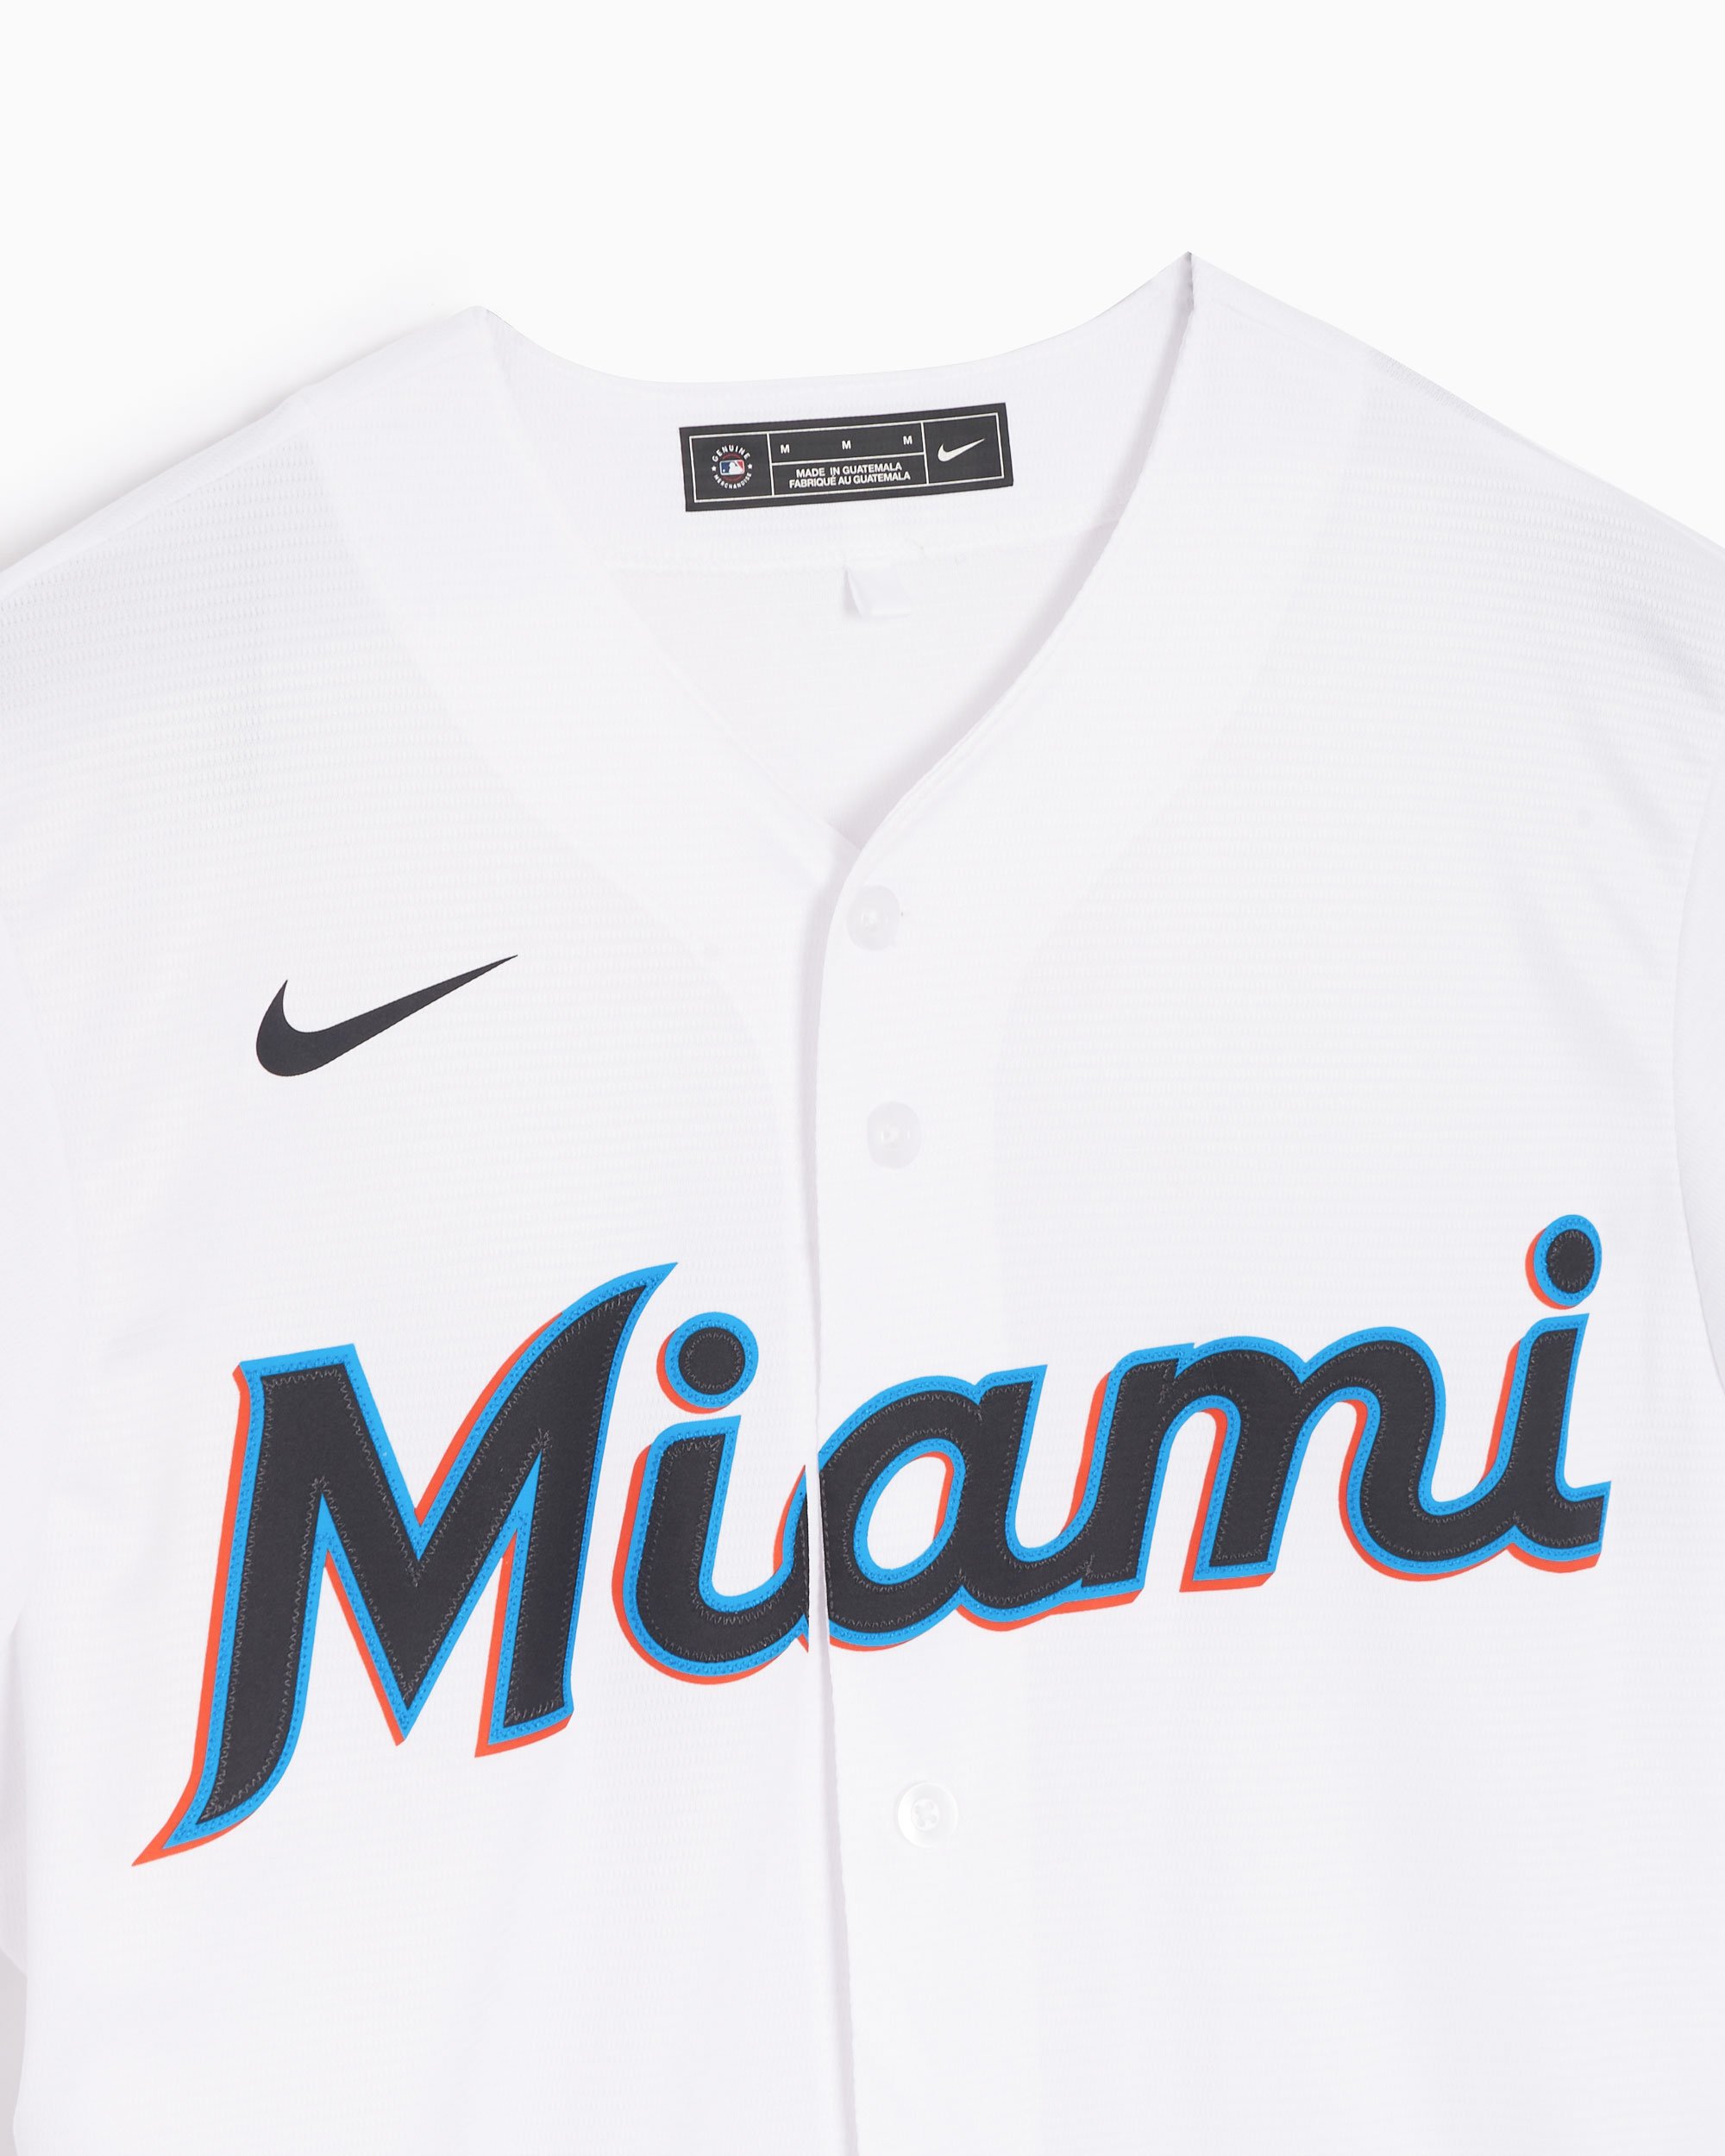 Nike Miami Marlins MLB Men's Replica Baseball Shirt White  T770-MQWH-MQM-XVH